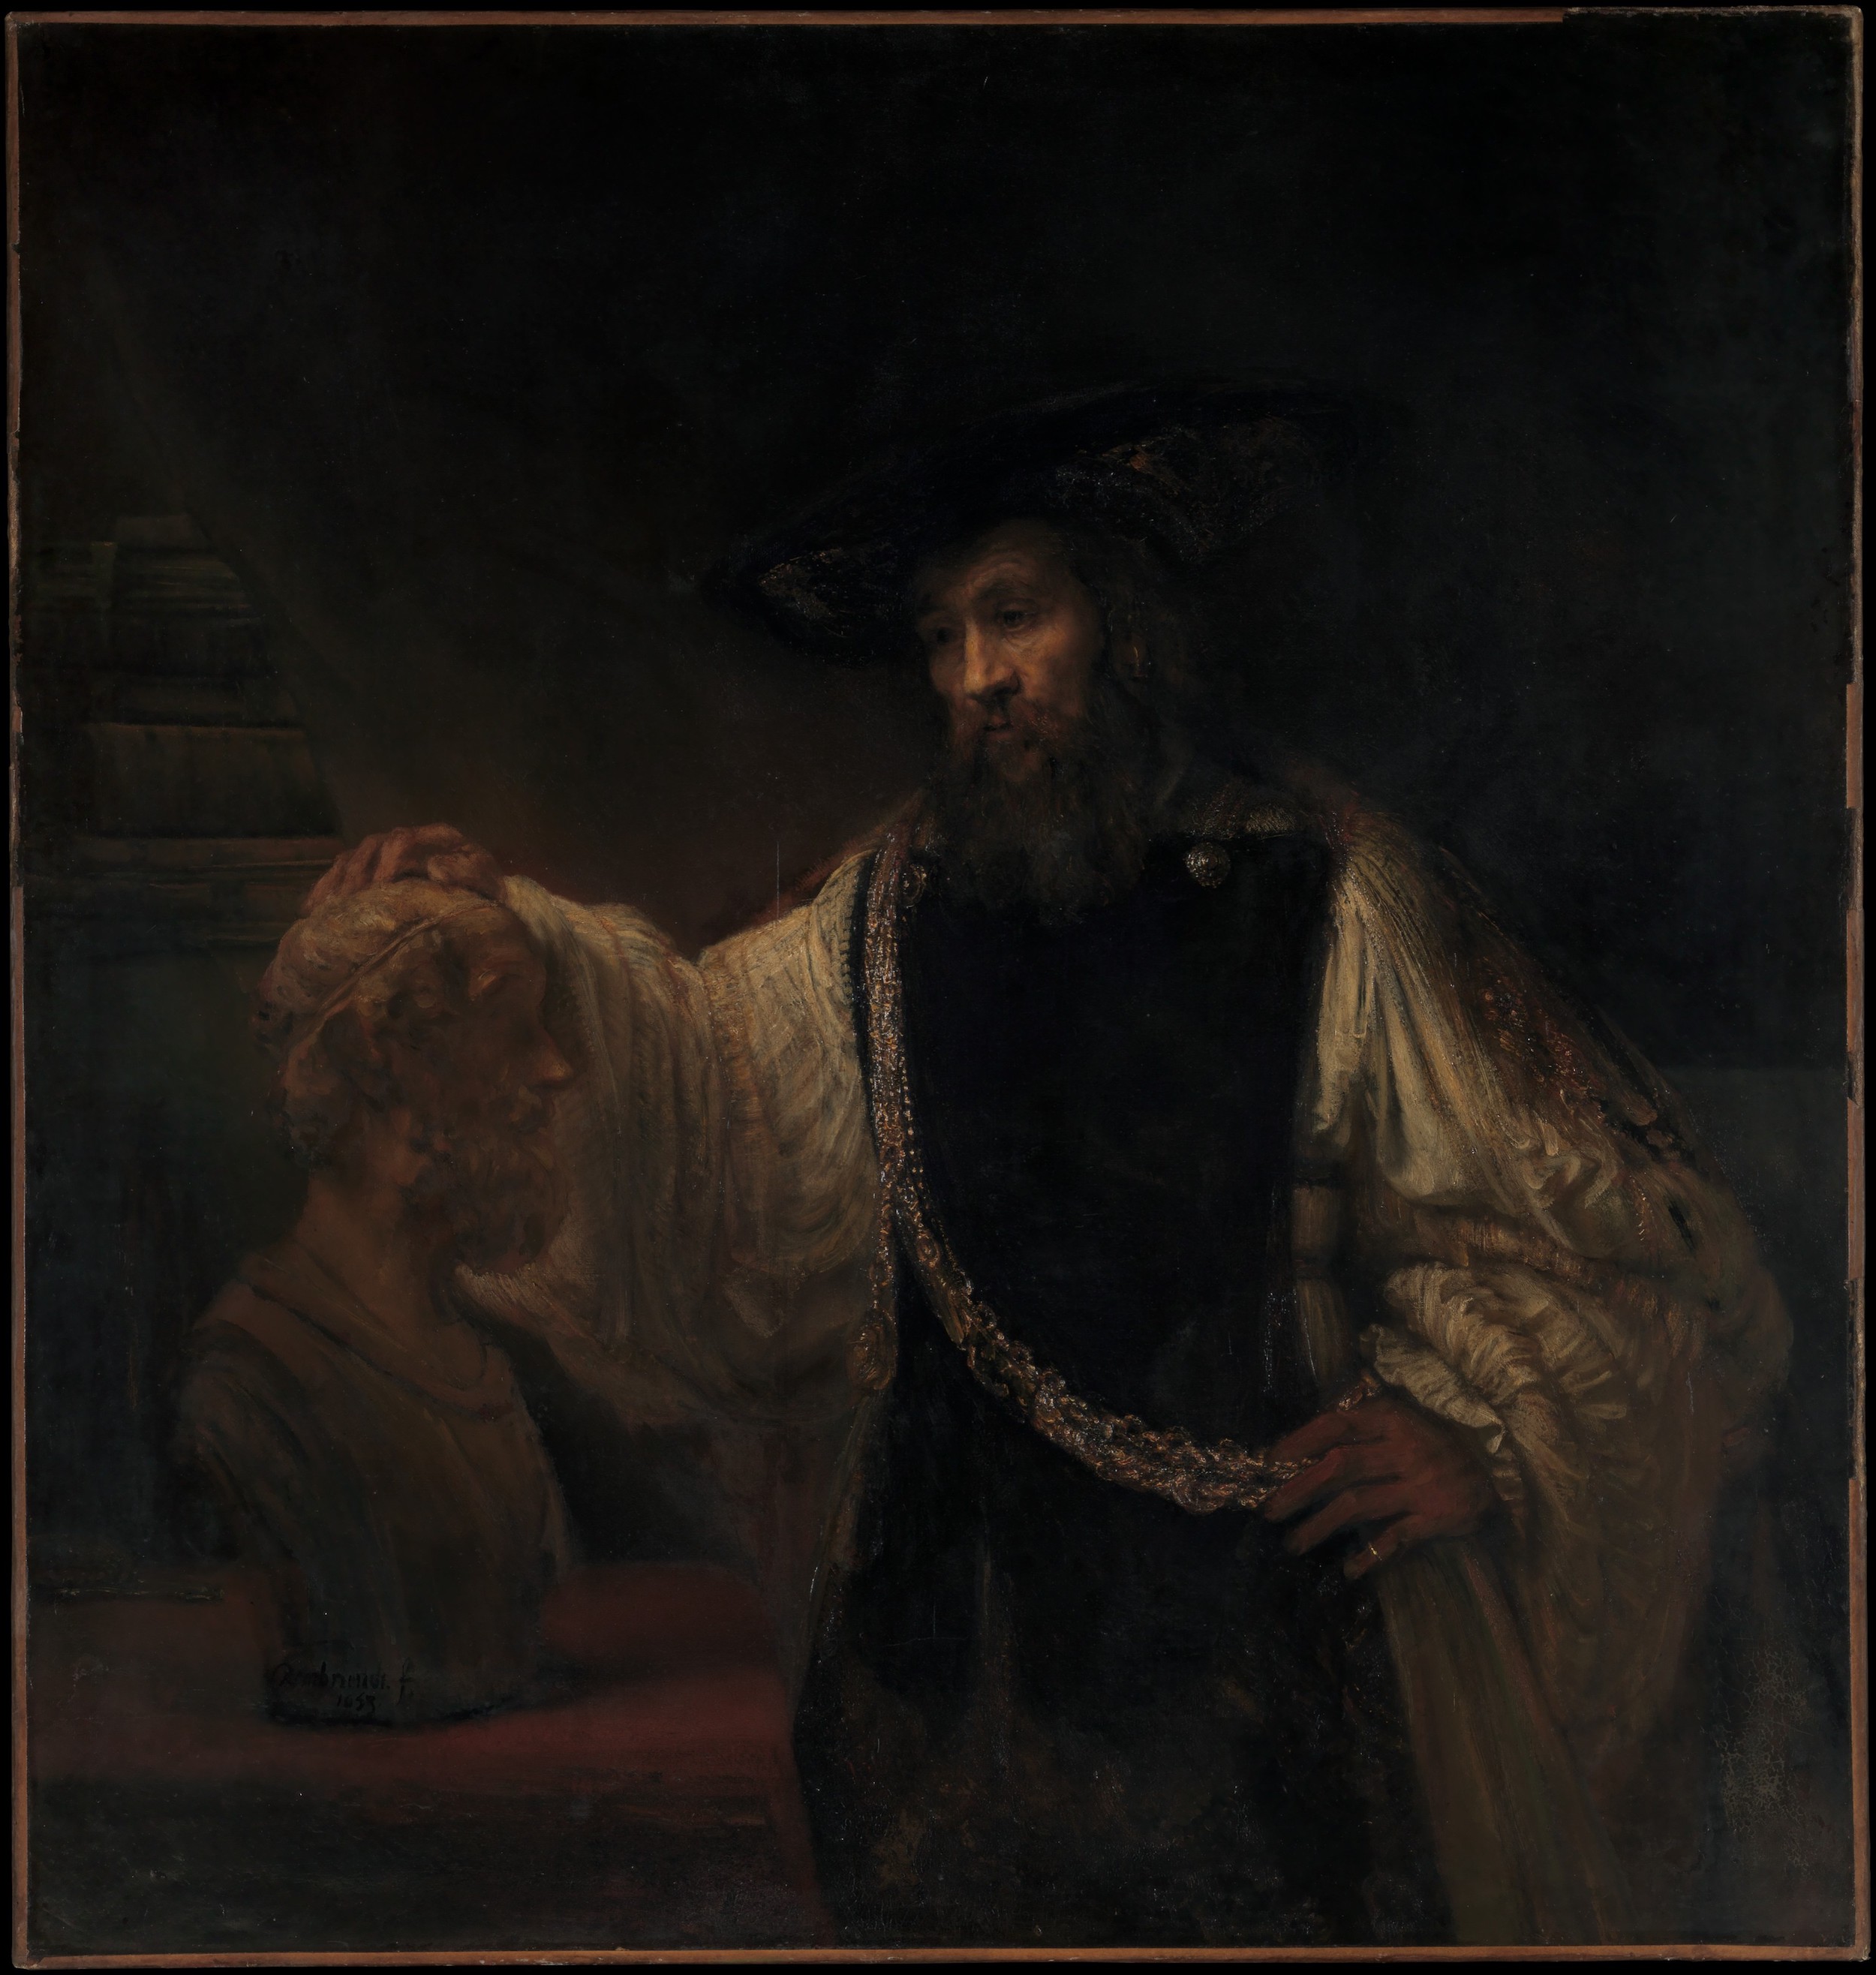 亞裏士多德與荷馬半身像 by Rembrandt van Rijn - 1653 - 143.5 x 136.5 cm 